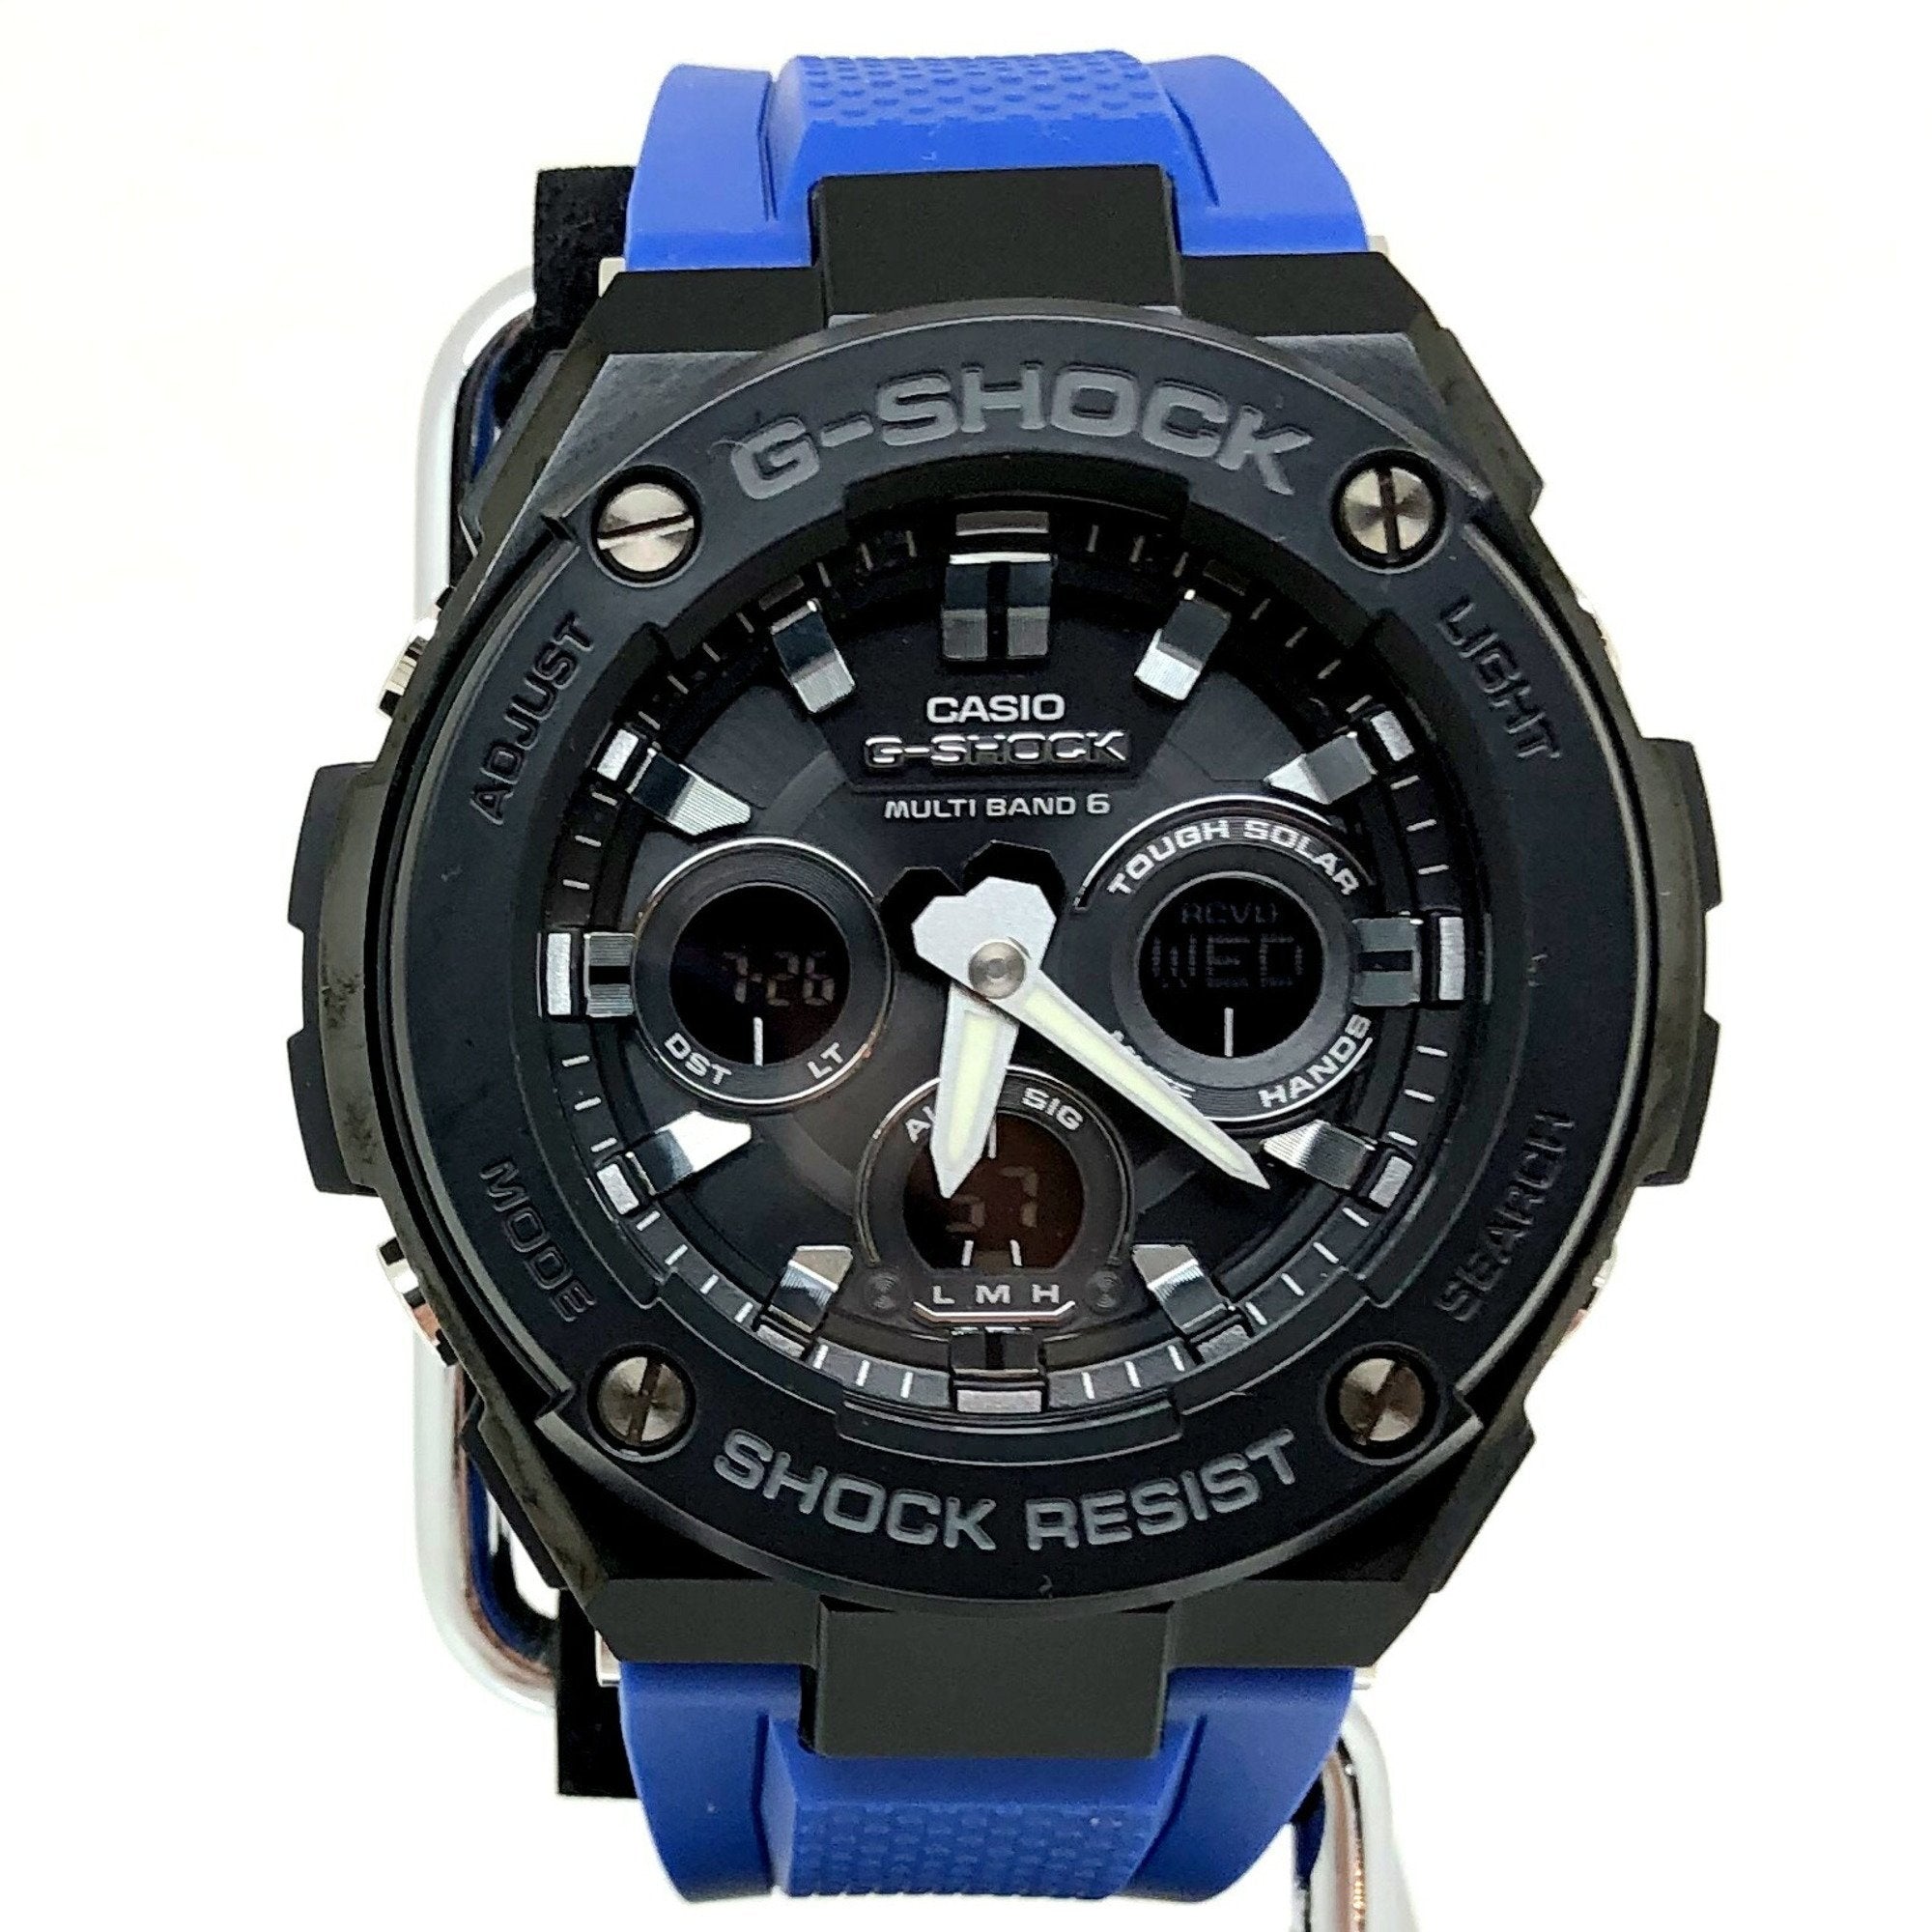 CASIO G-SHOCK G-Shock watch GST-W300G-2A1 G-STEEL G steel electric wav